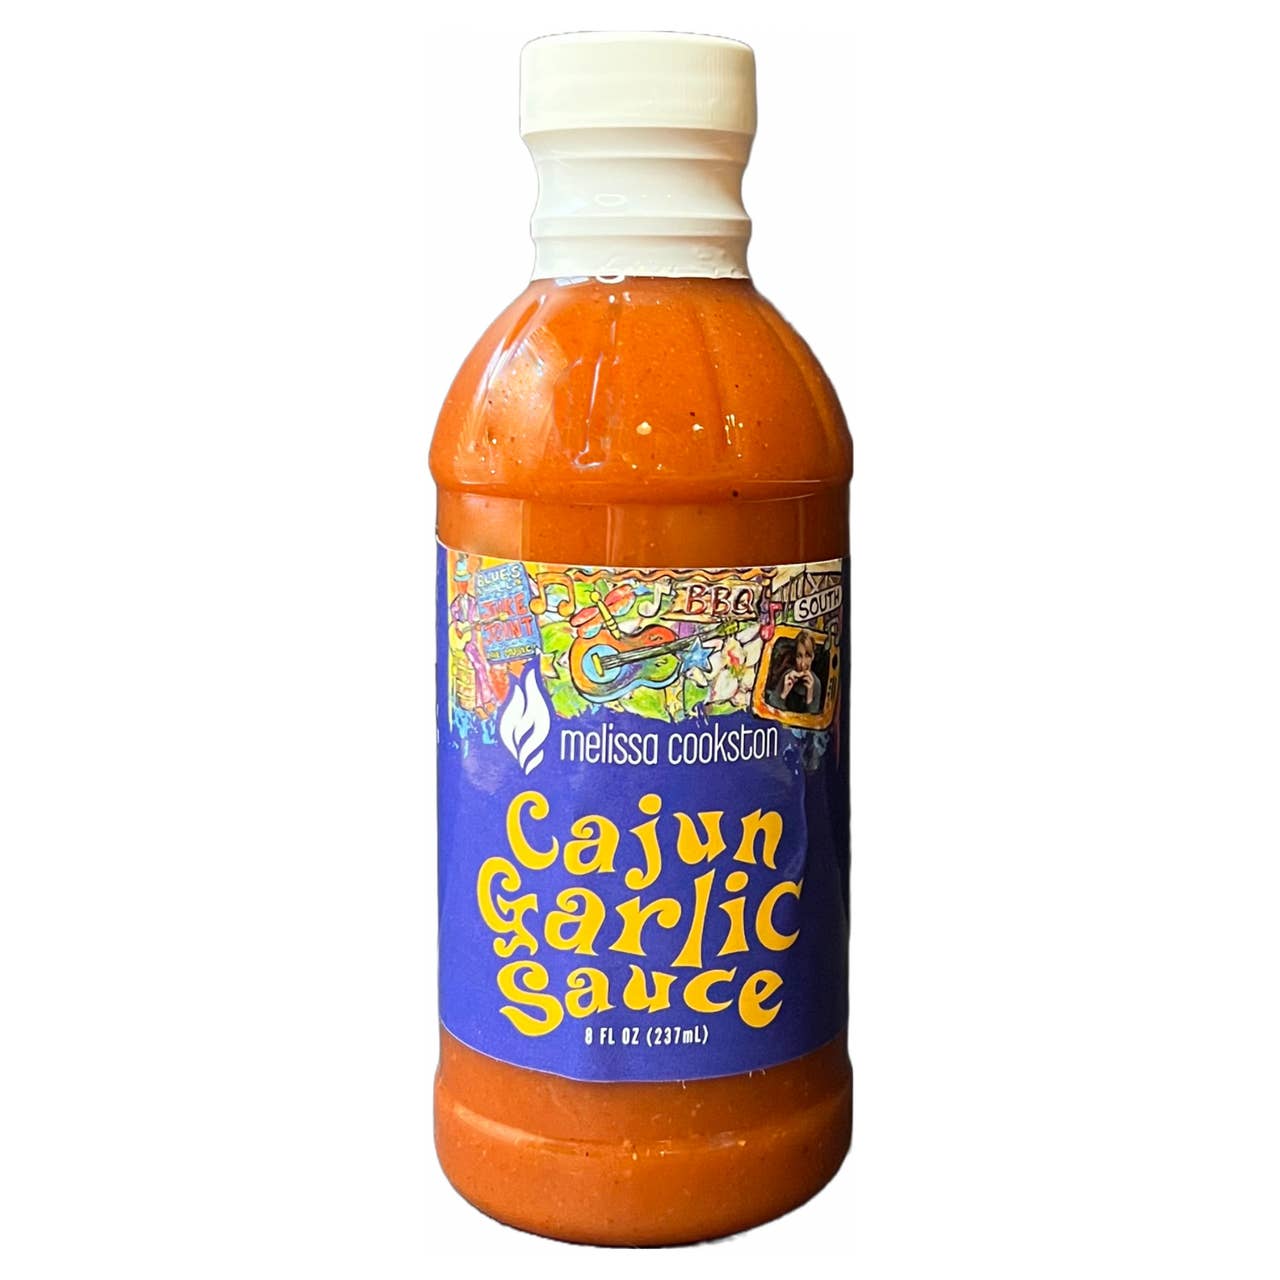 Cajun Garlic Sauce